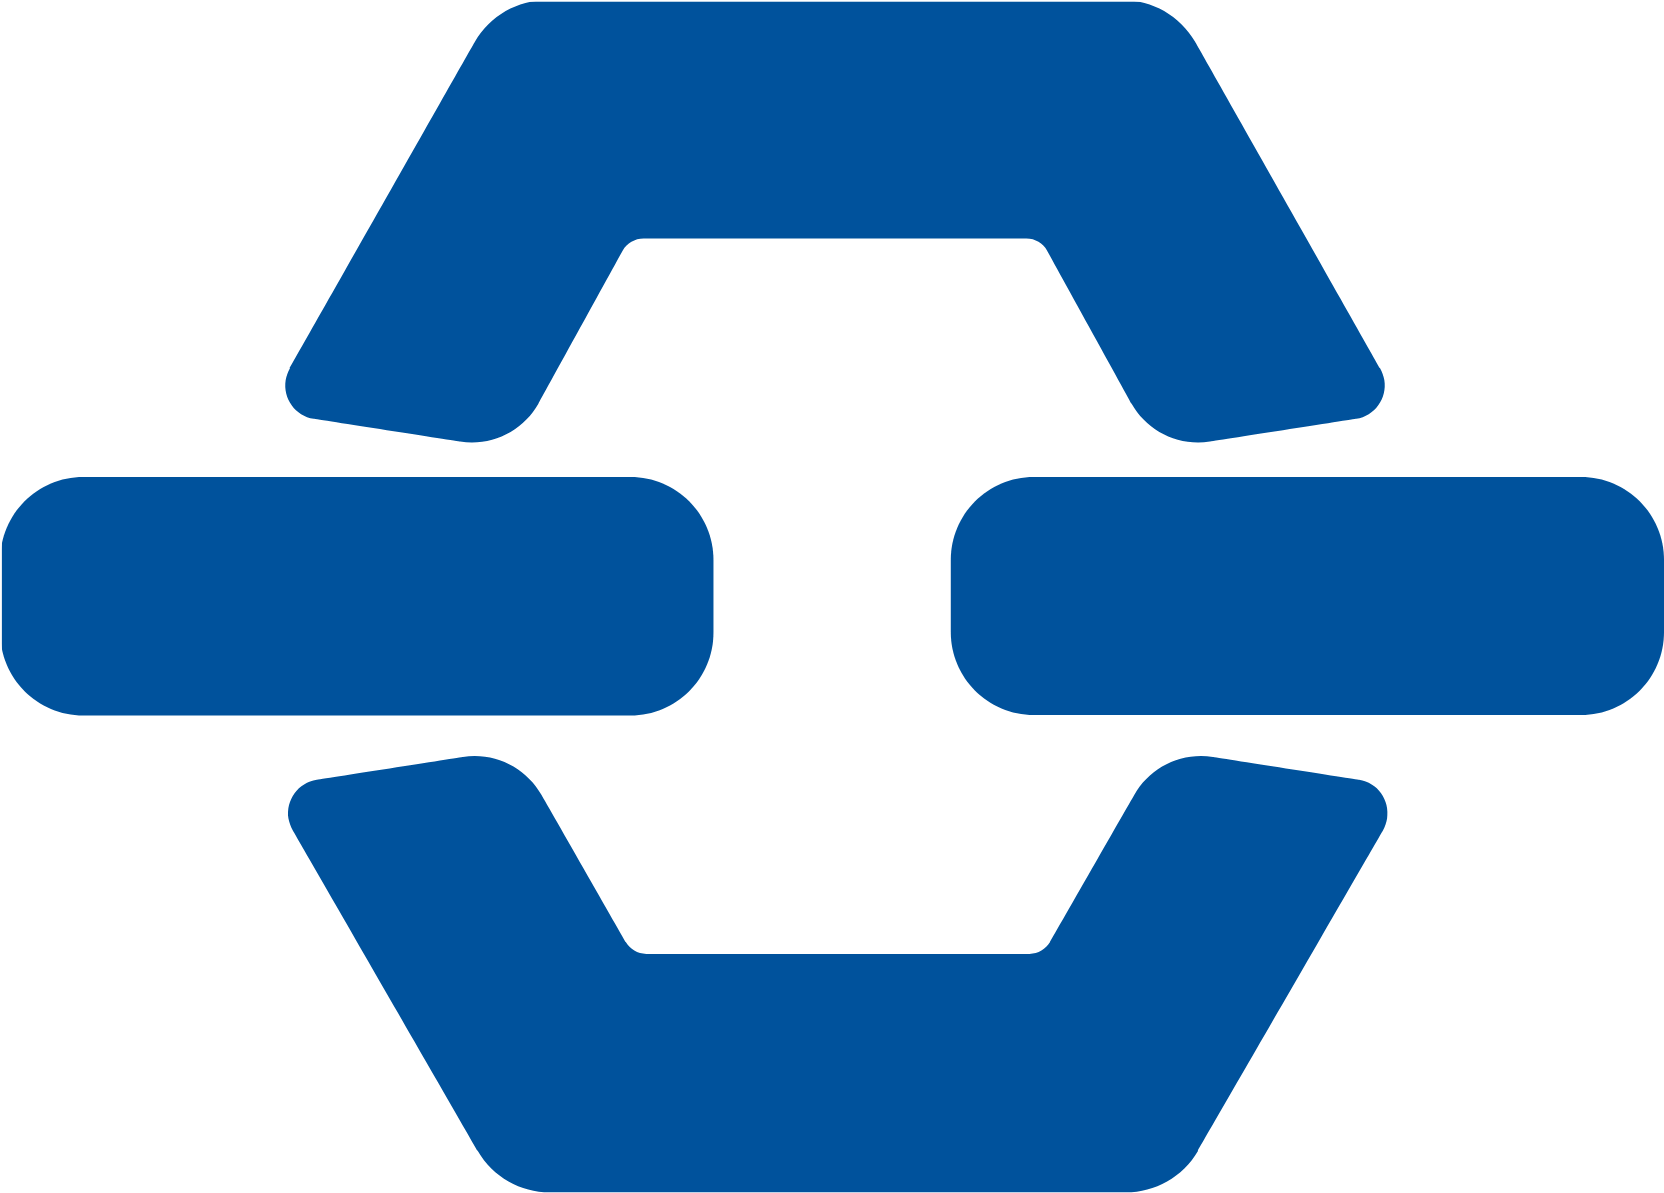 CSN Mineração logo (transparent PNG)